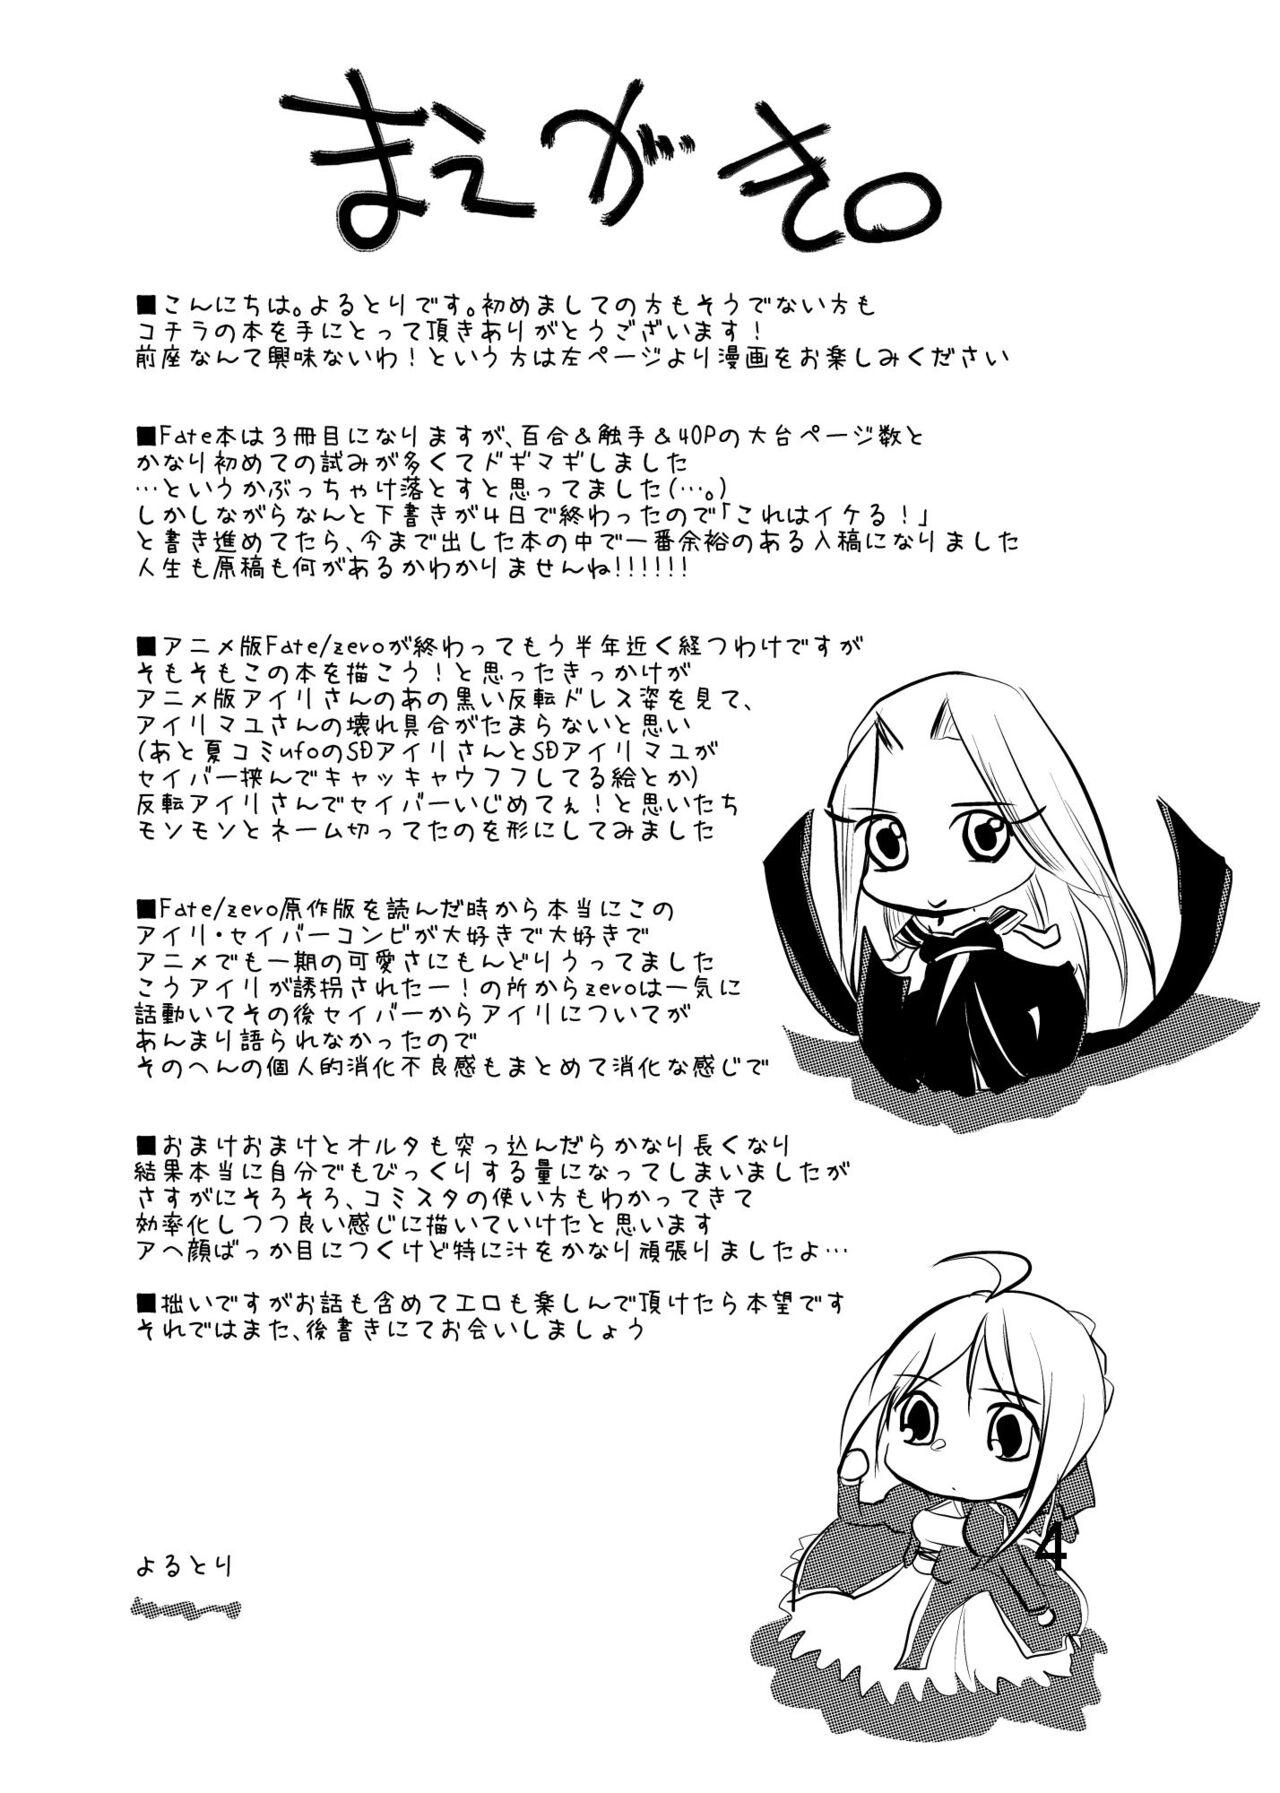 Bisex Daraku no Hana - Fate zero Suck - Page 3